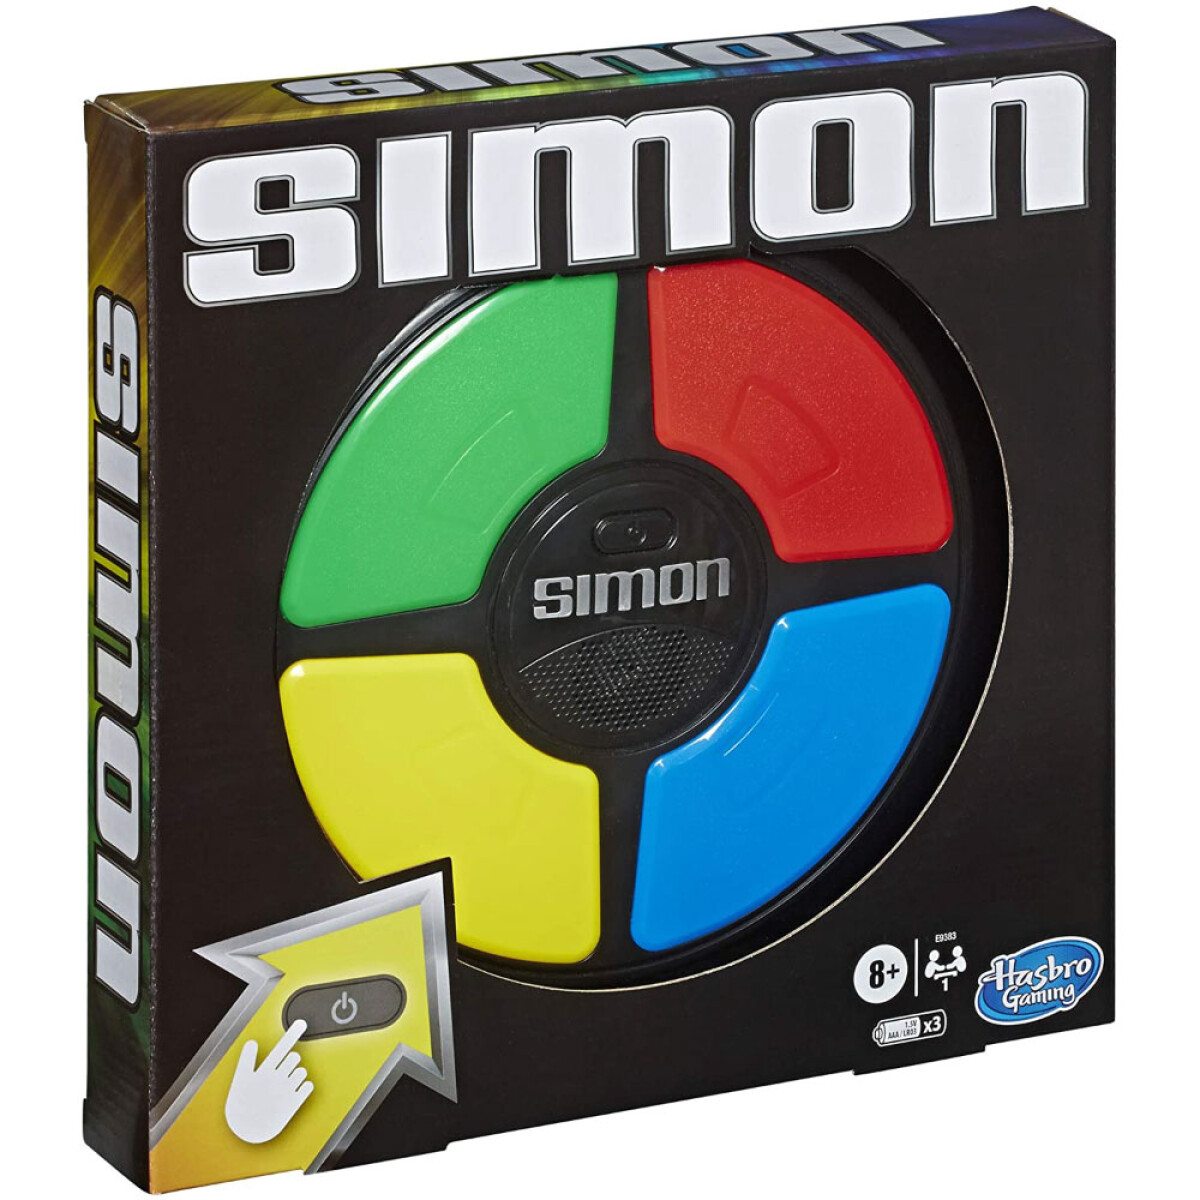 Simon Clasico E93835l00 